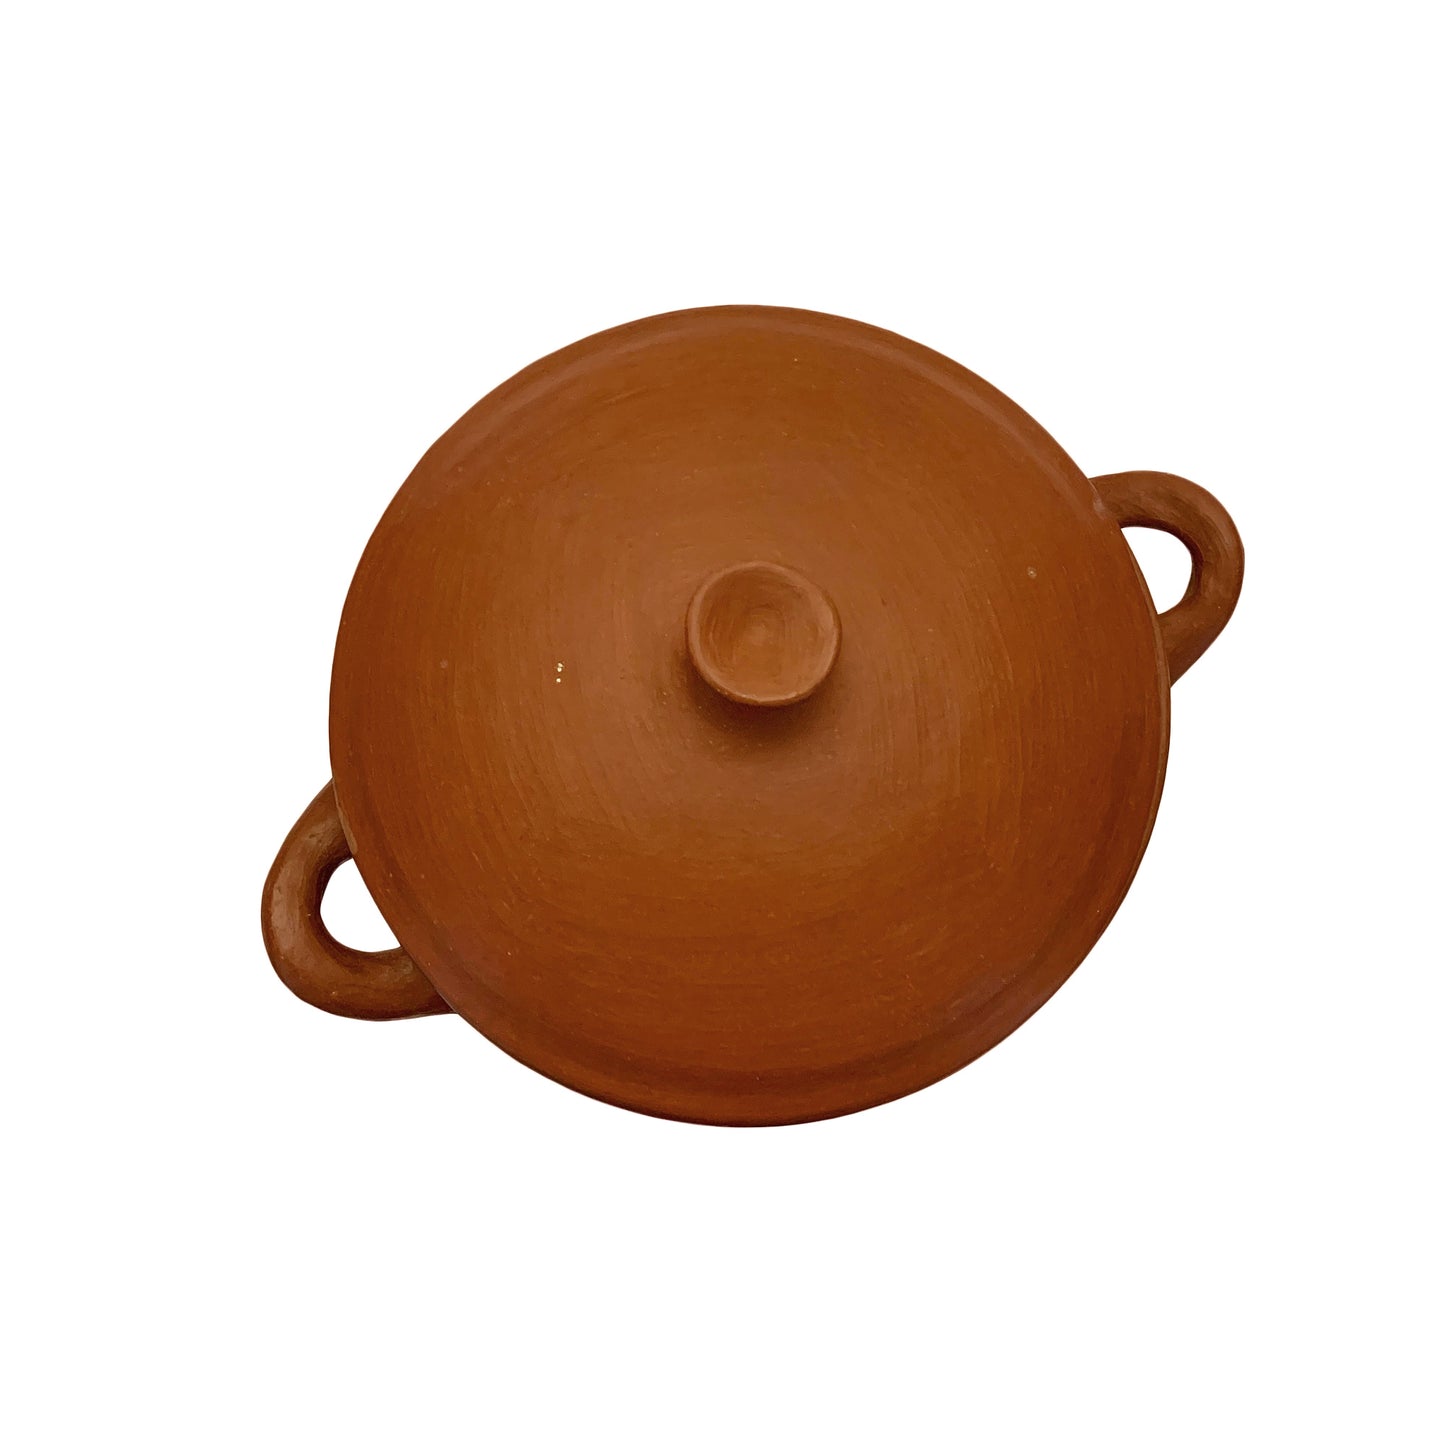 Red Clay Cooking Pot + Lid | Cazuela de Barro Rojo | 3 Quart Capacity | Handmade in Oaxaca, Mexico